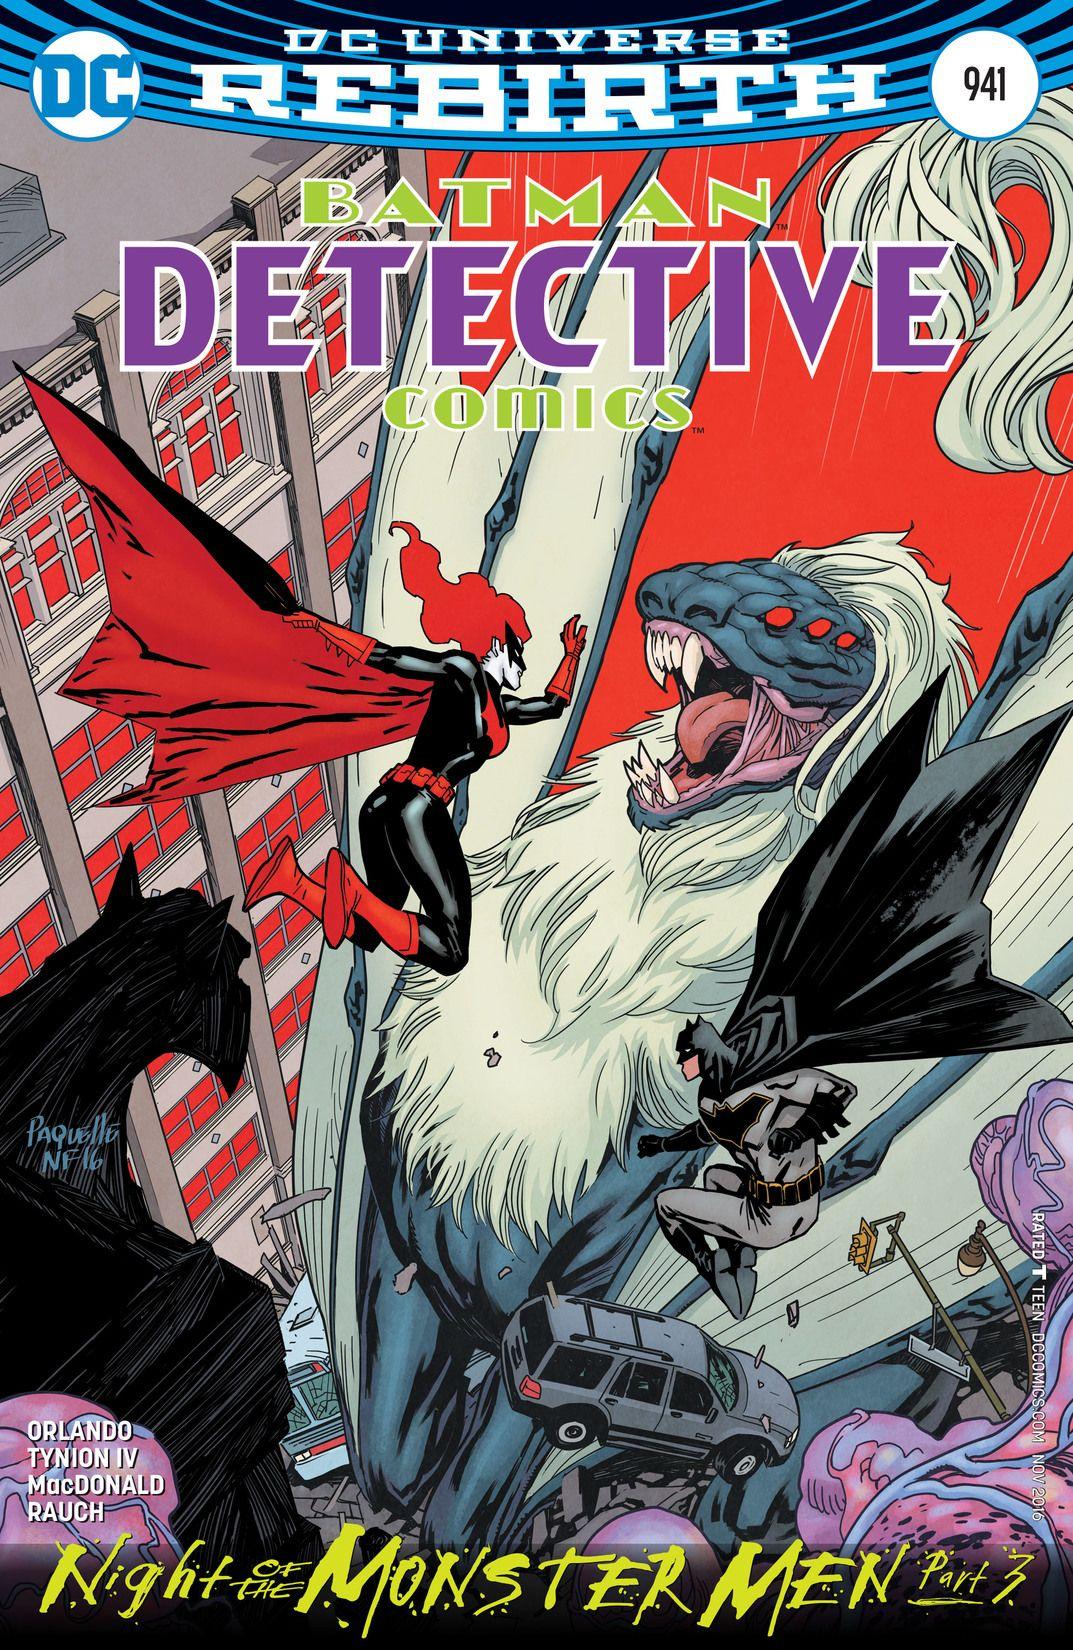 Detective Comics Vol. 1 #941